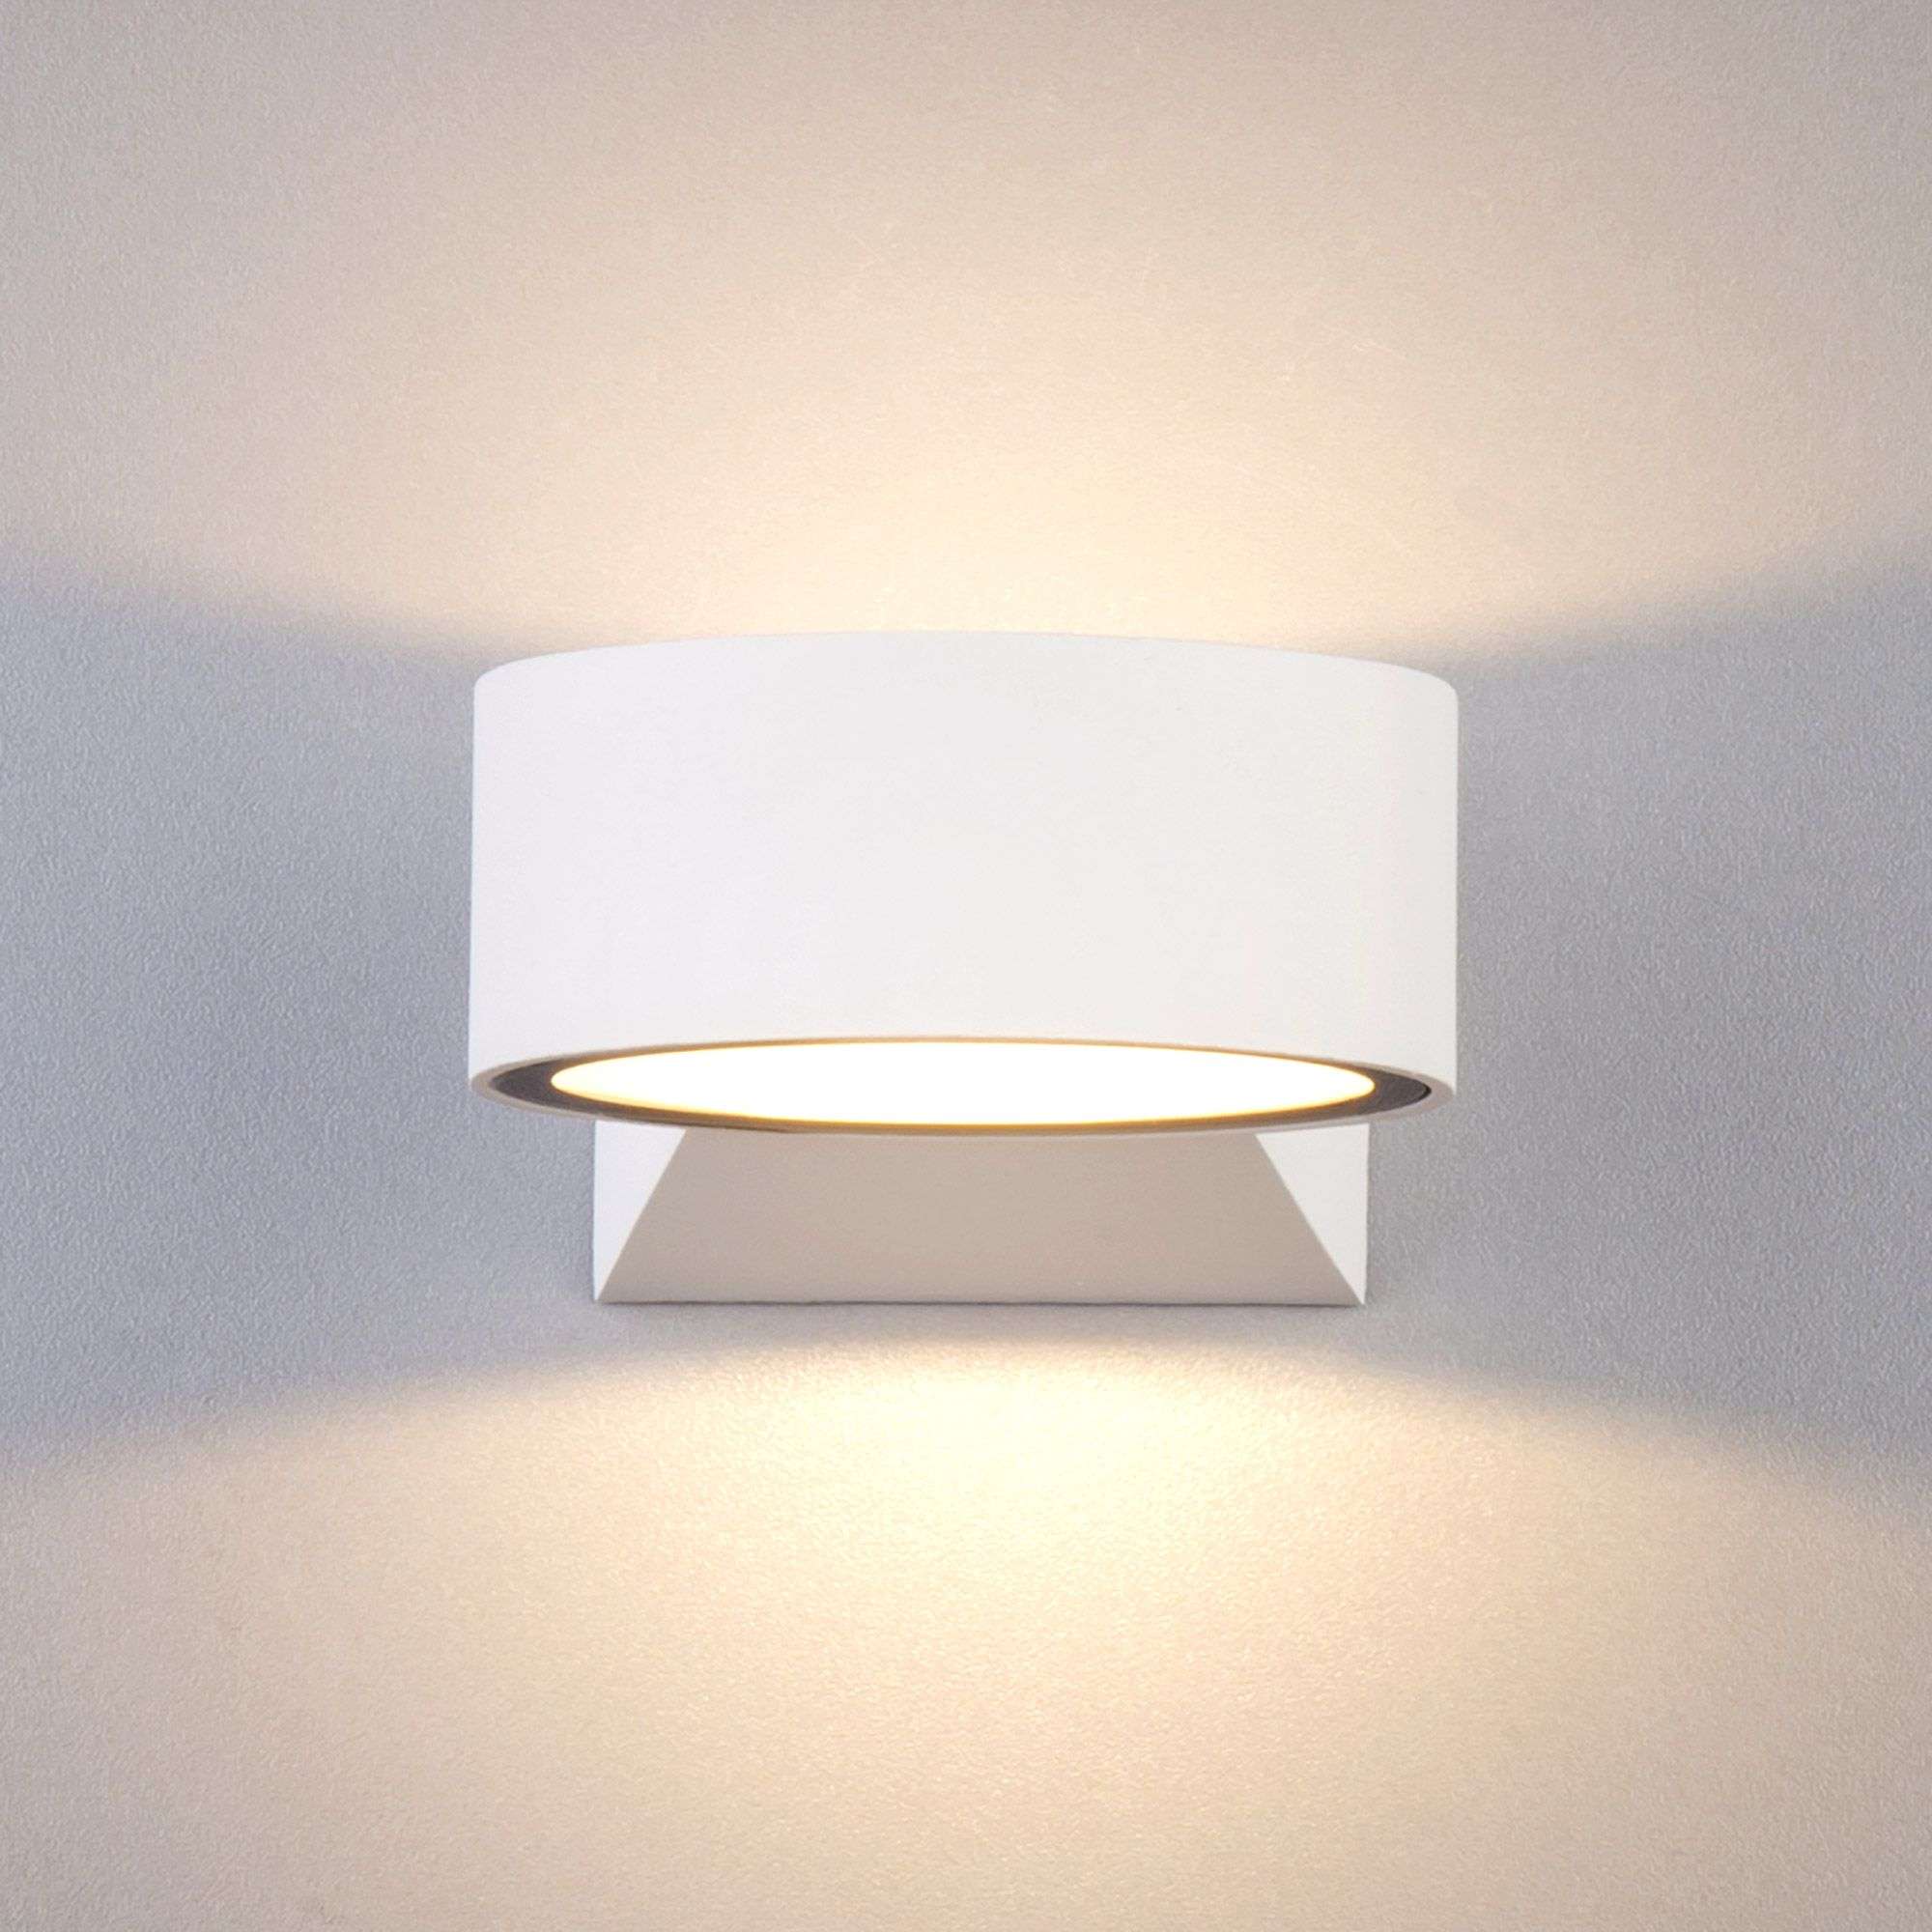 Пылевлагозащи<wbr>щенный светодиодный светильник Blinc белый IP54 1549 Techno LED белый. Фото 6